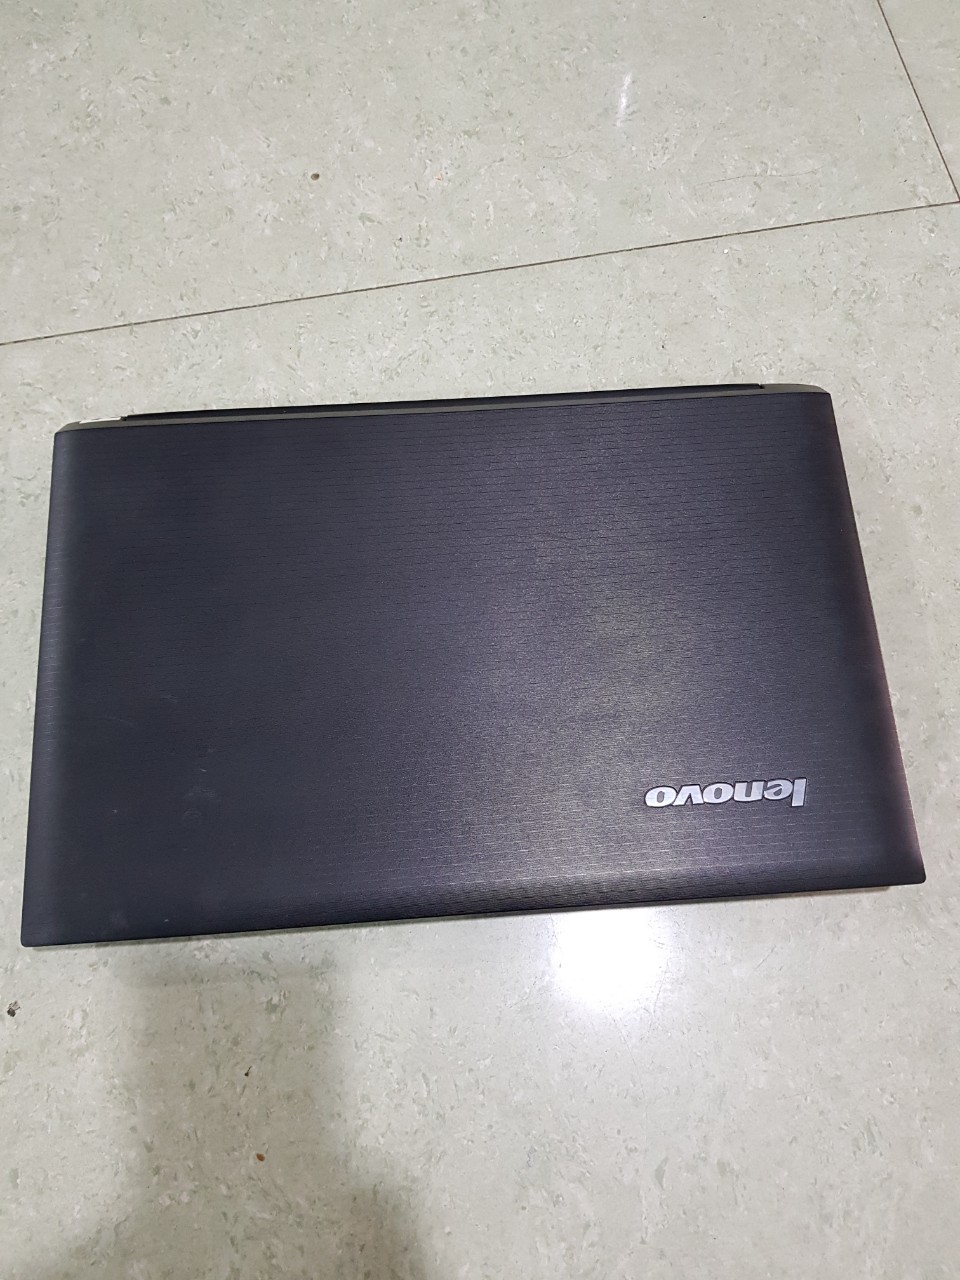 #Laptop #Lenovo #B570 Core i3